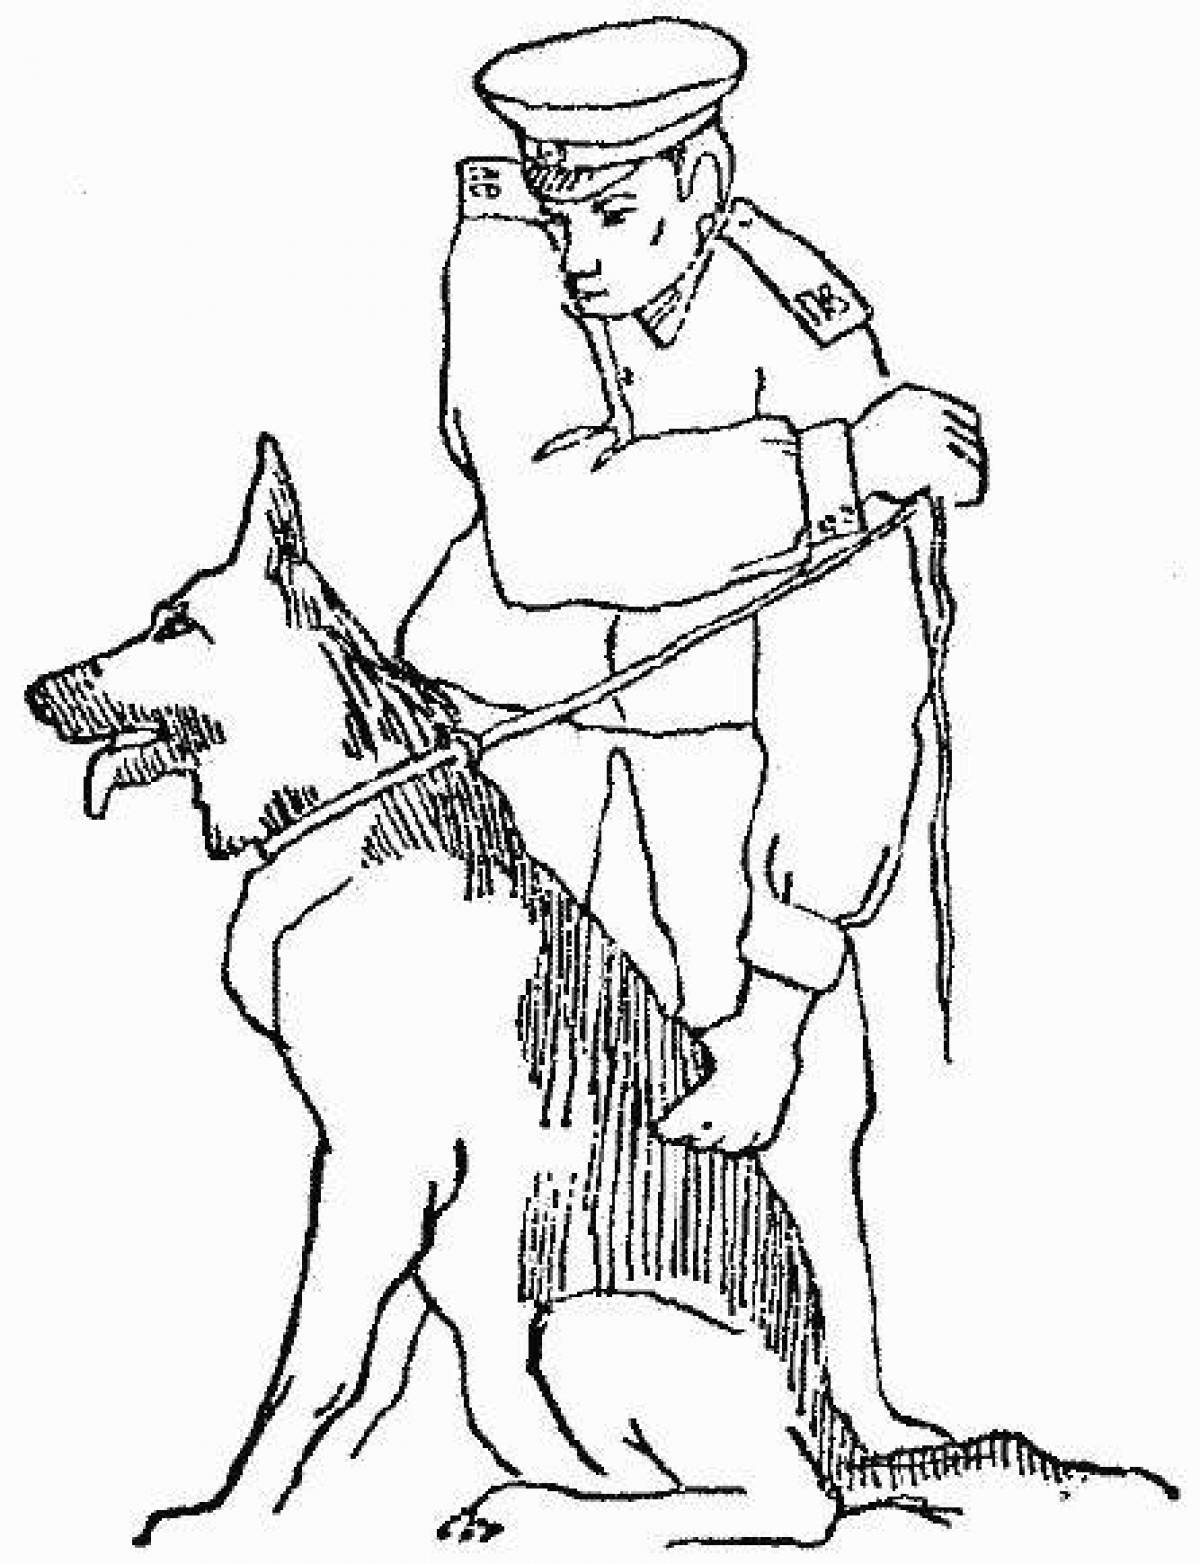 Brilliant border guard with dog